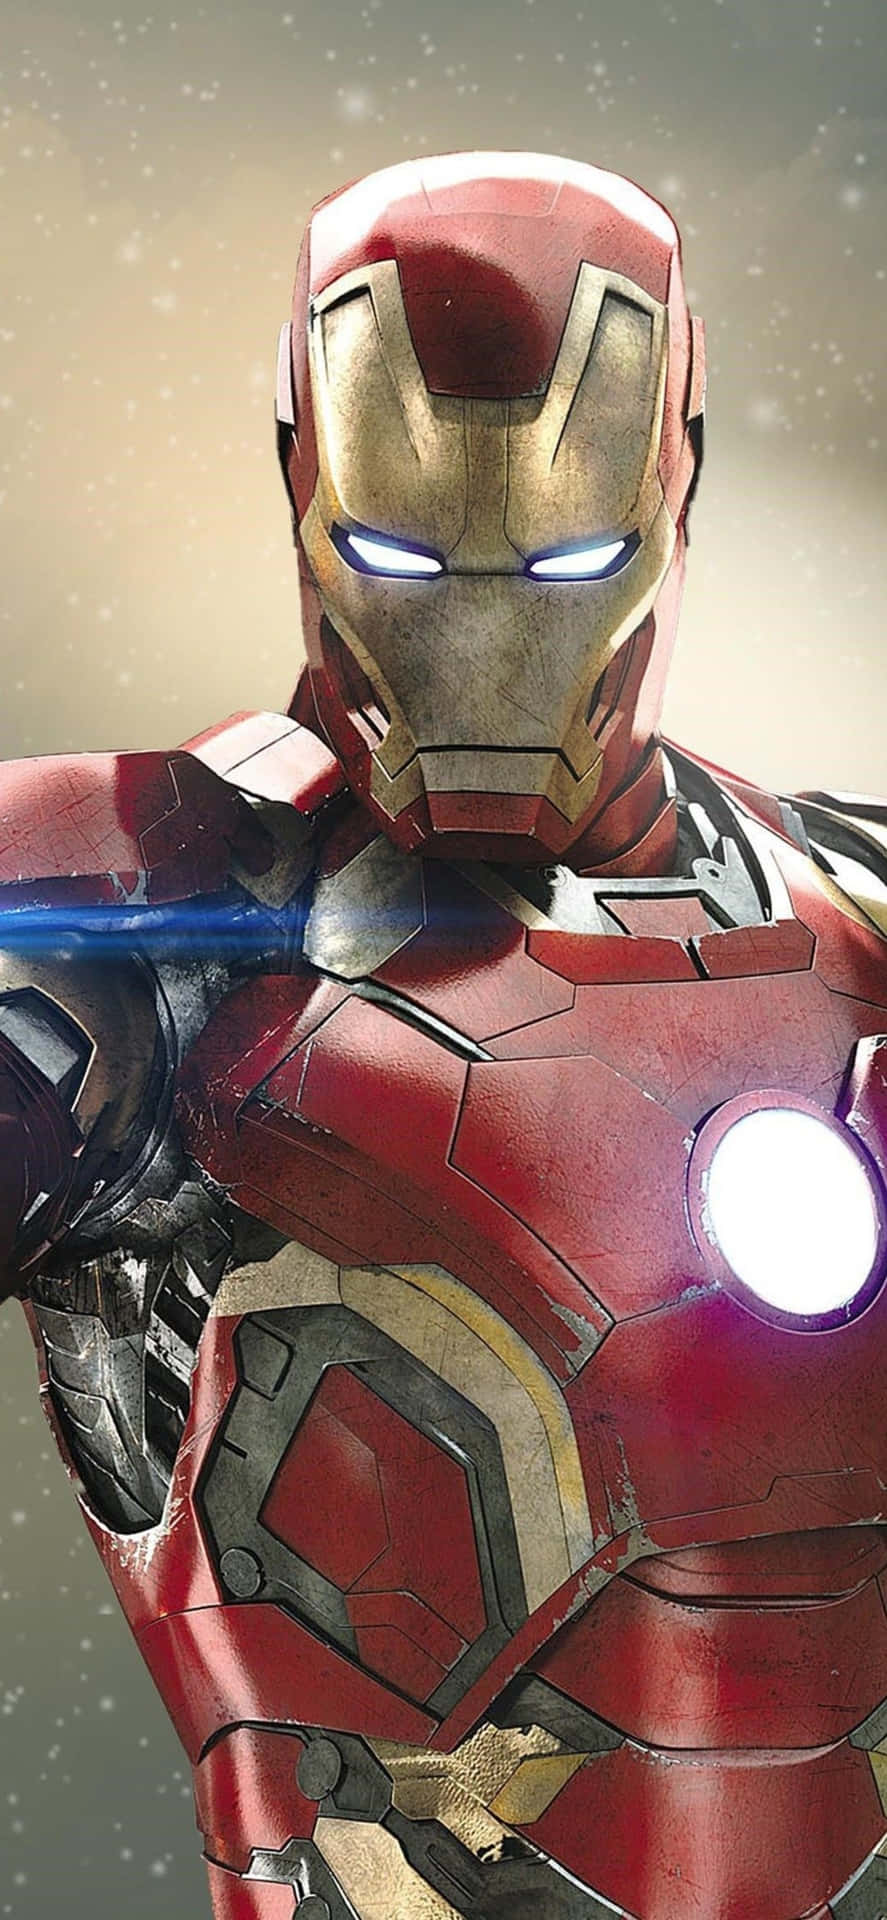 Bakgrundsbildför Iphone X Med Iron Man I Rött Och Guld.